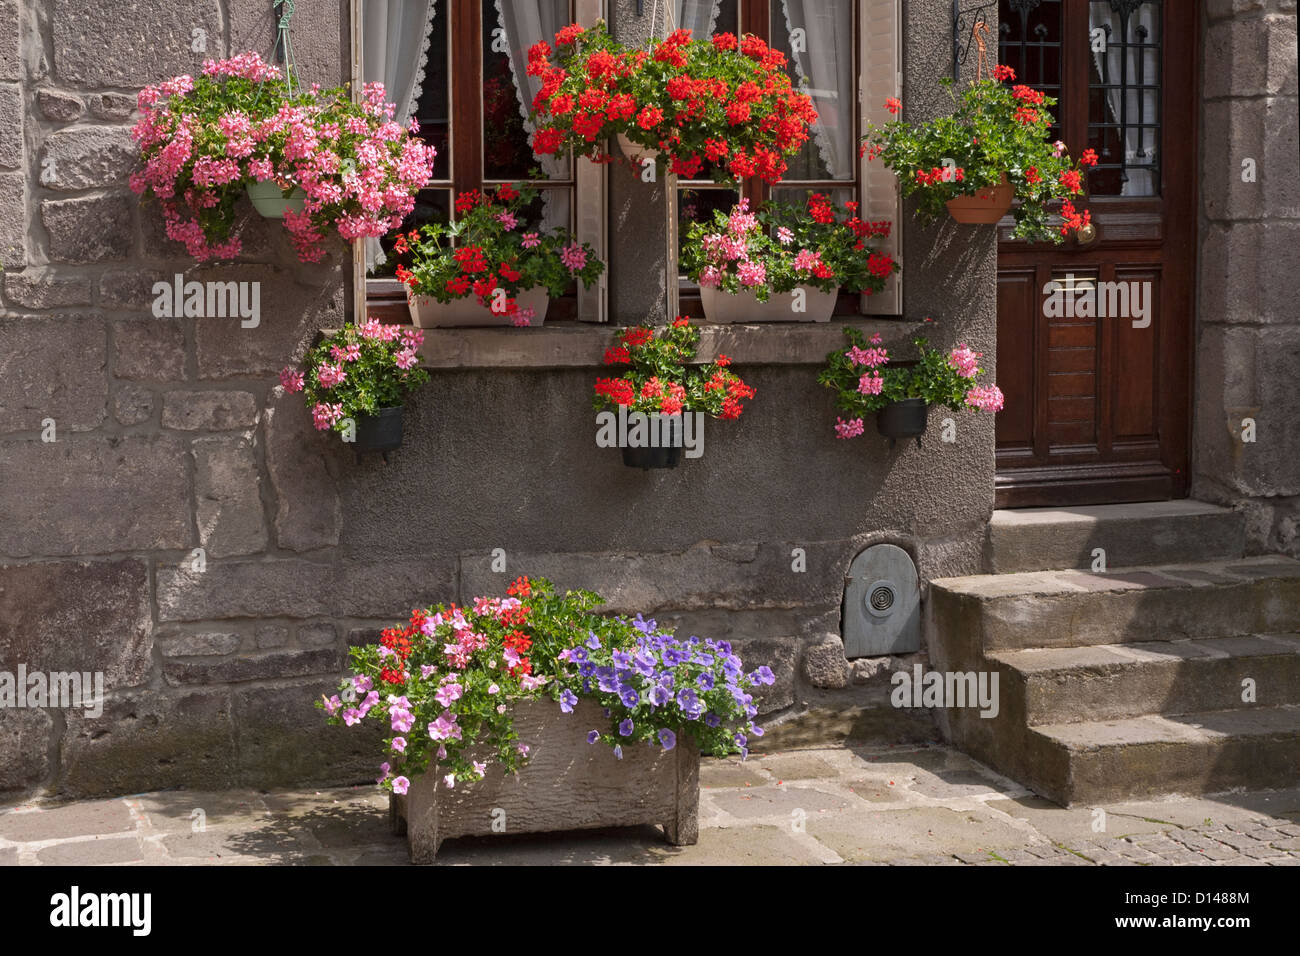 Estate vasi per piante e appendere cesti pieni di fiori per la maggior parte dei gerani davanti alla porta e fasi di casa. Foto Stock